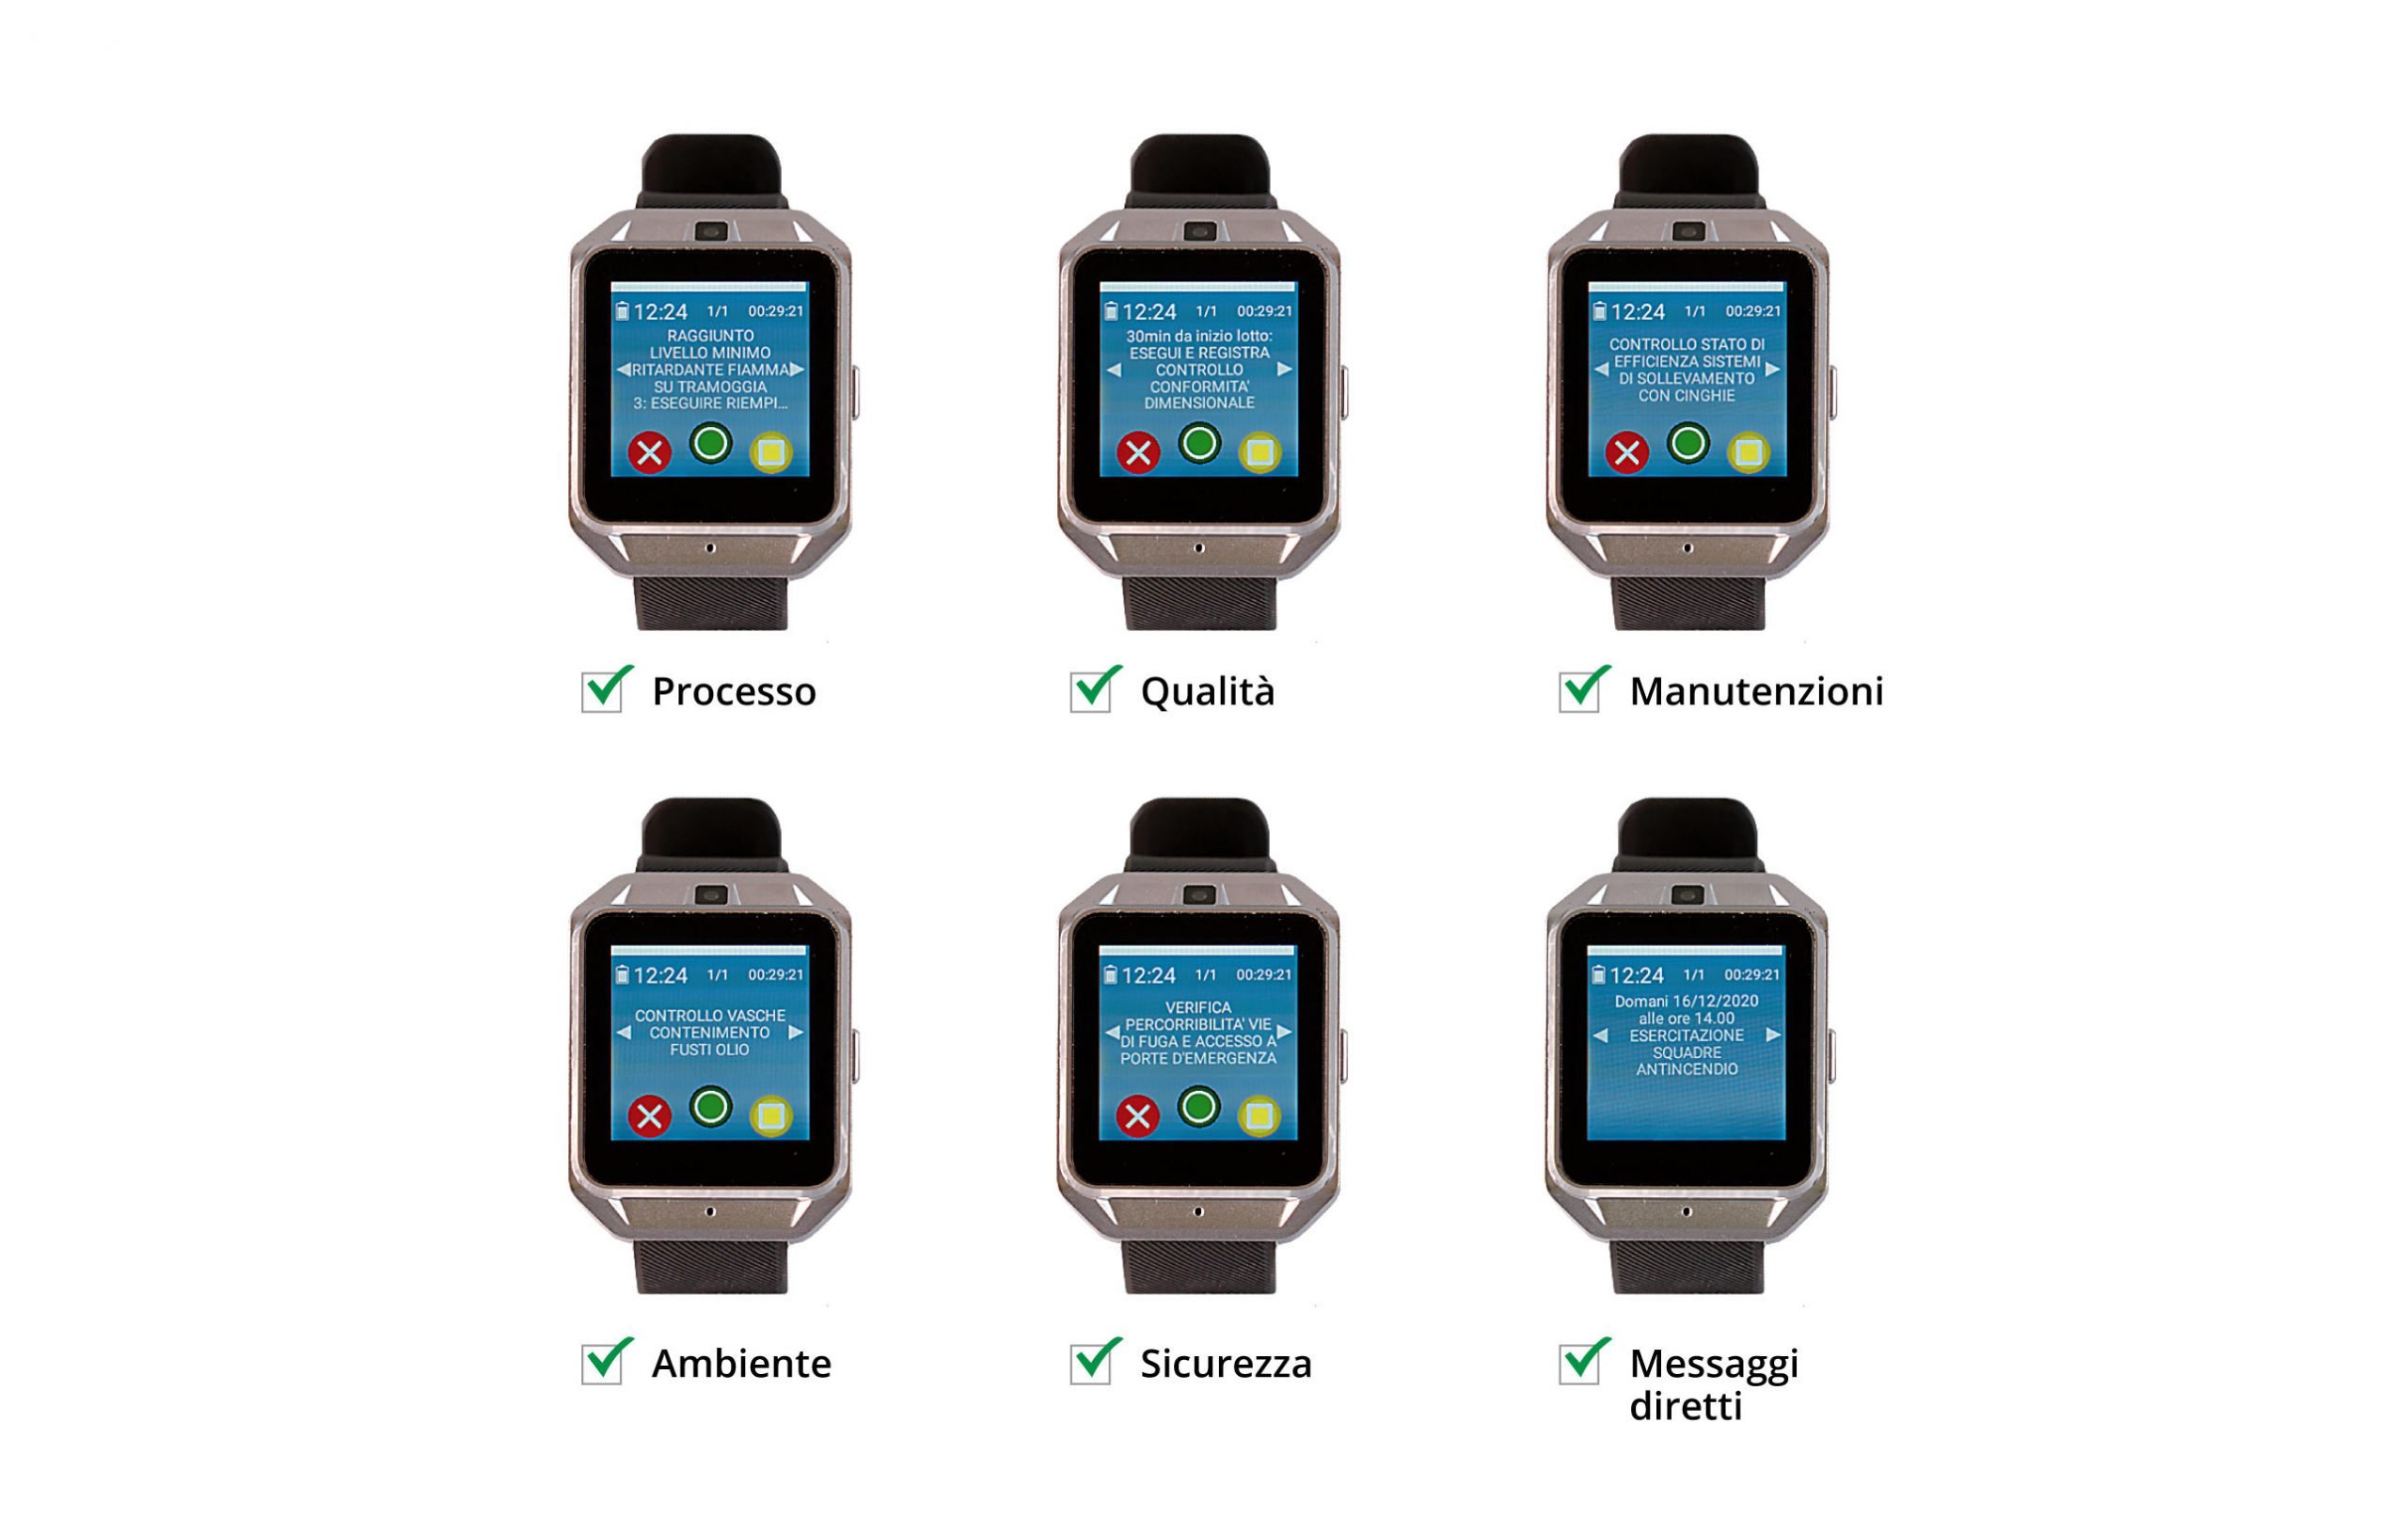 Lodestar trasmette istruzioni agli operai con smartwatch